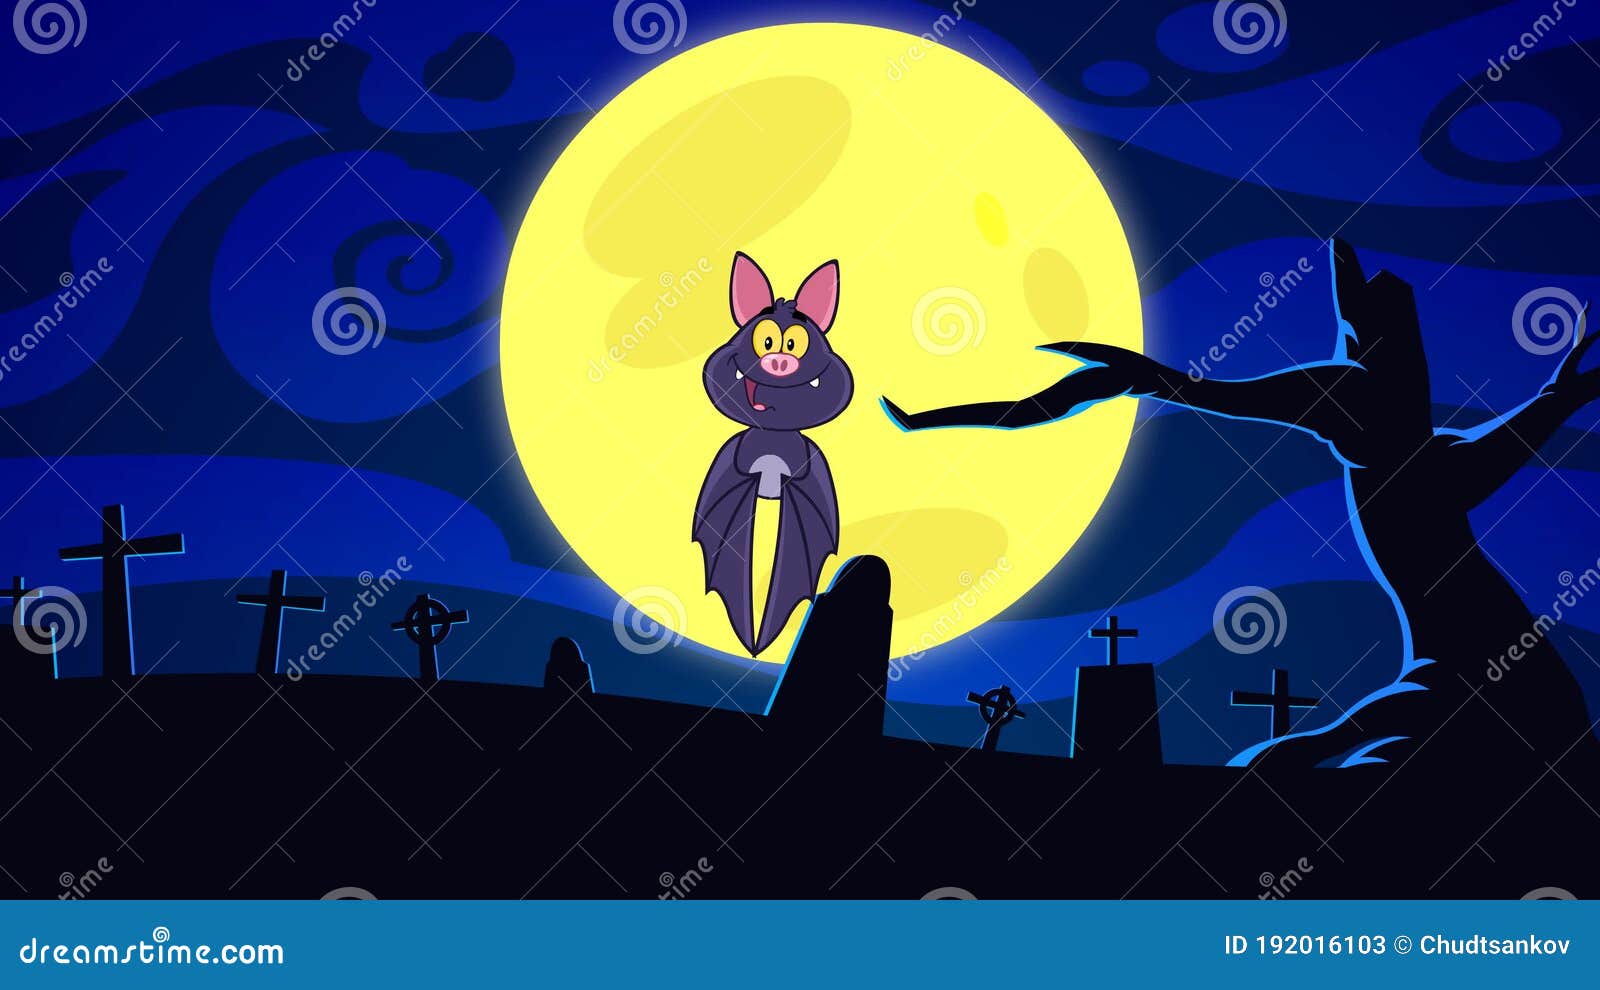 Vetores de Desenho Animado Engraçado Morcego Gordo Voando Halloween Vetor  Morcego Vampiro Delineado Personagem e mais imagens de Amarelo - iStock